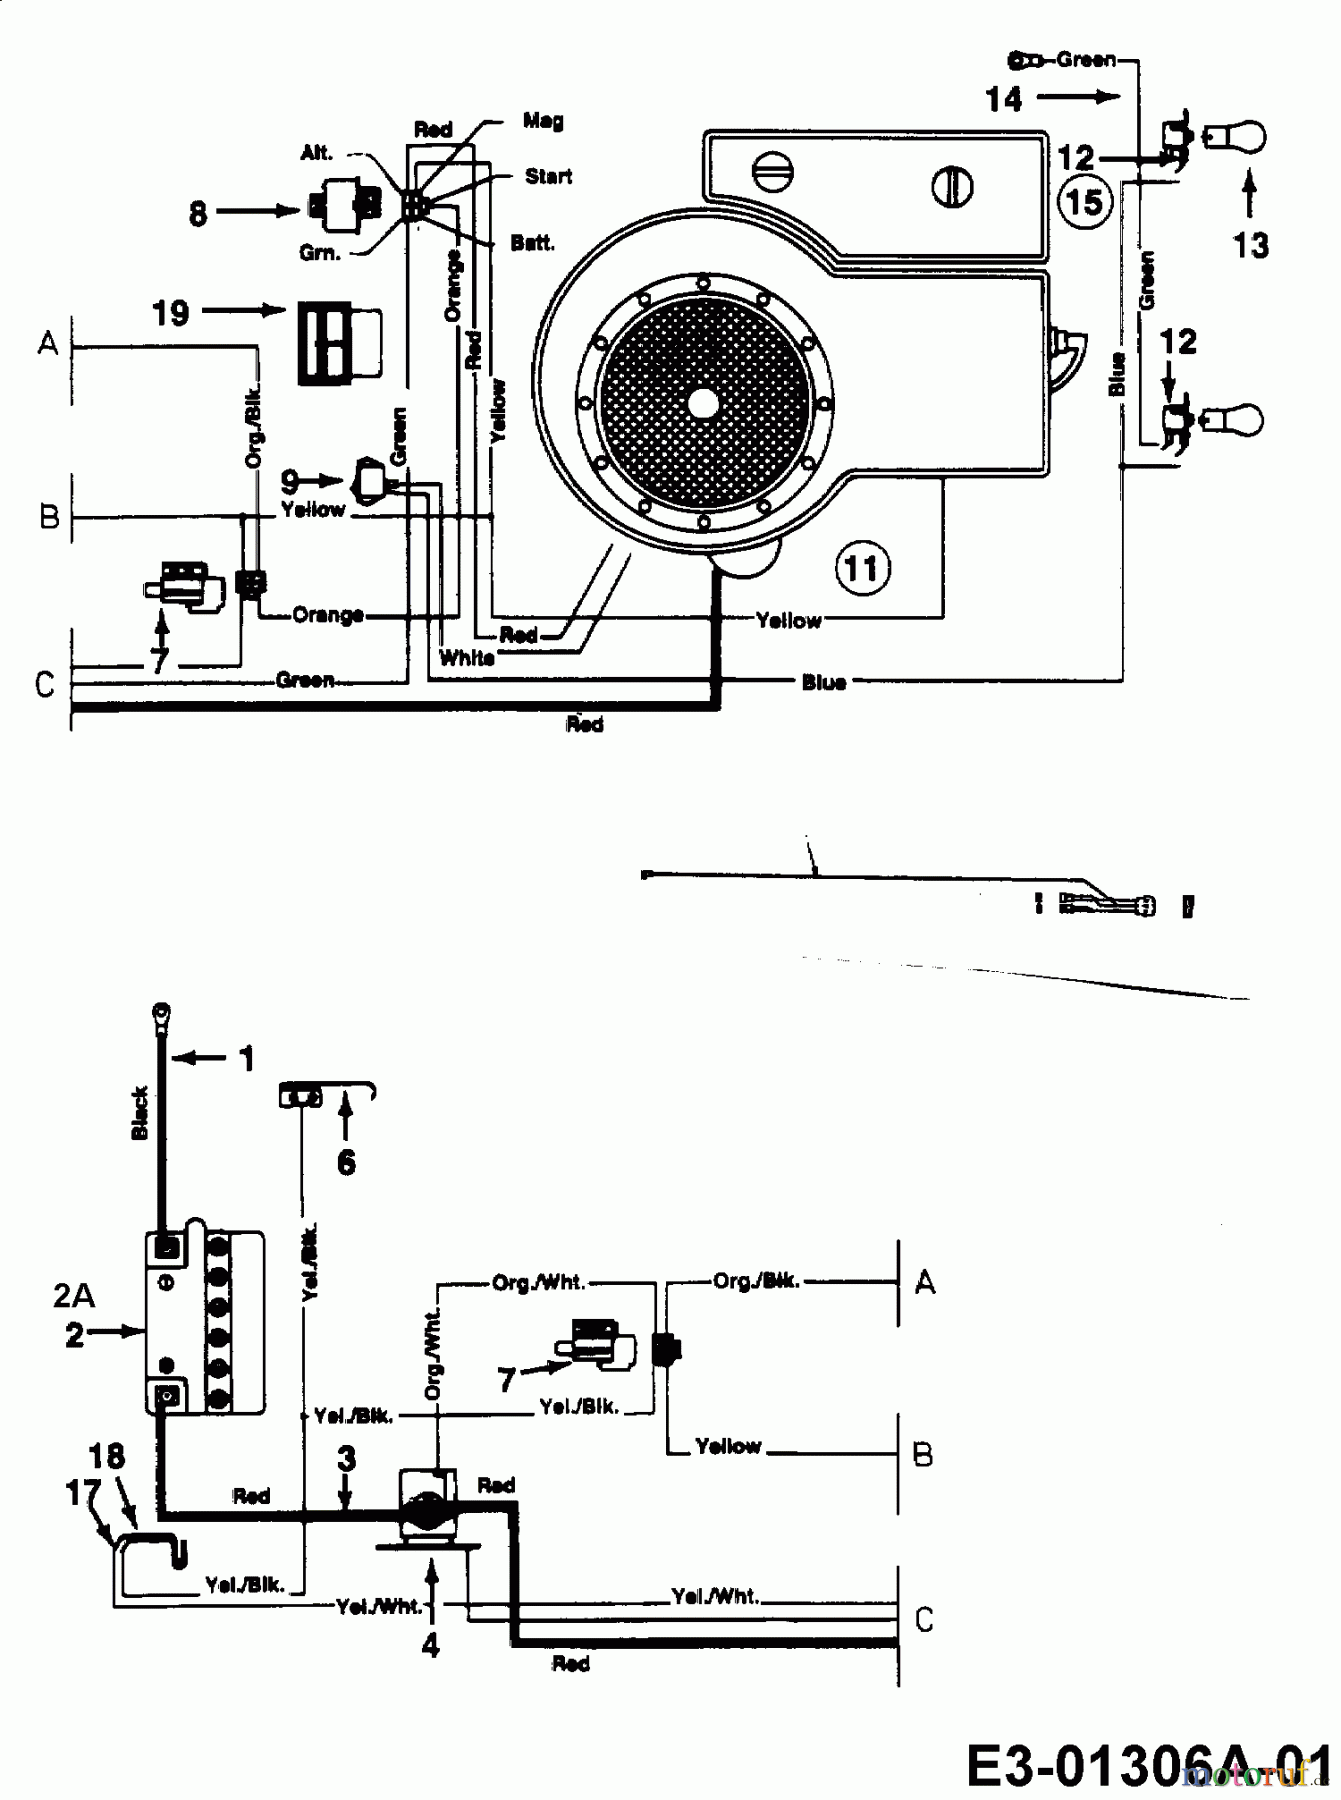  Univert Tracteurs de pelouse 130 BF 13AA47UF663  (2000) Plan électrique cylindre simple